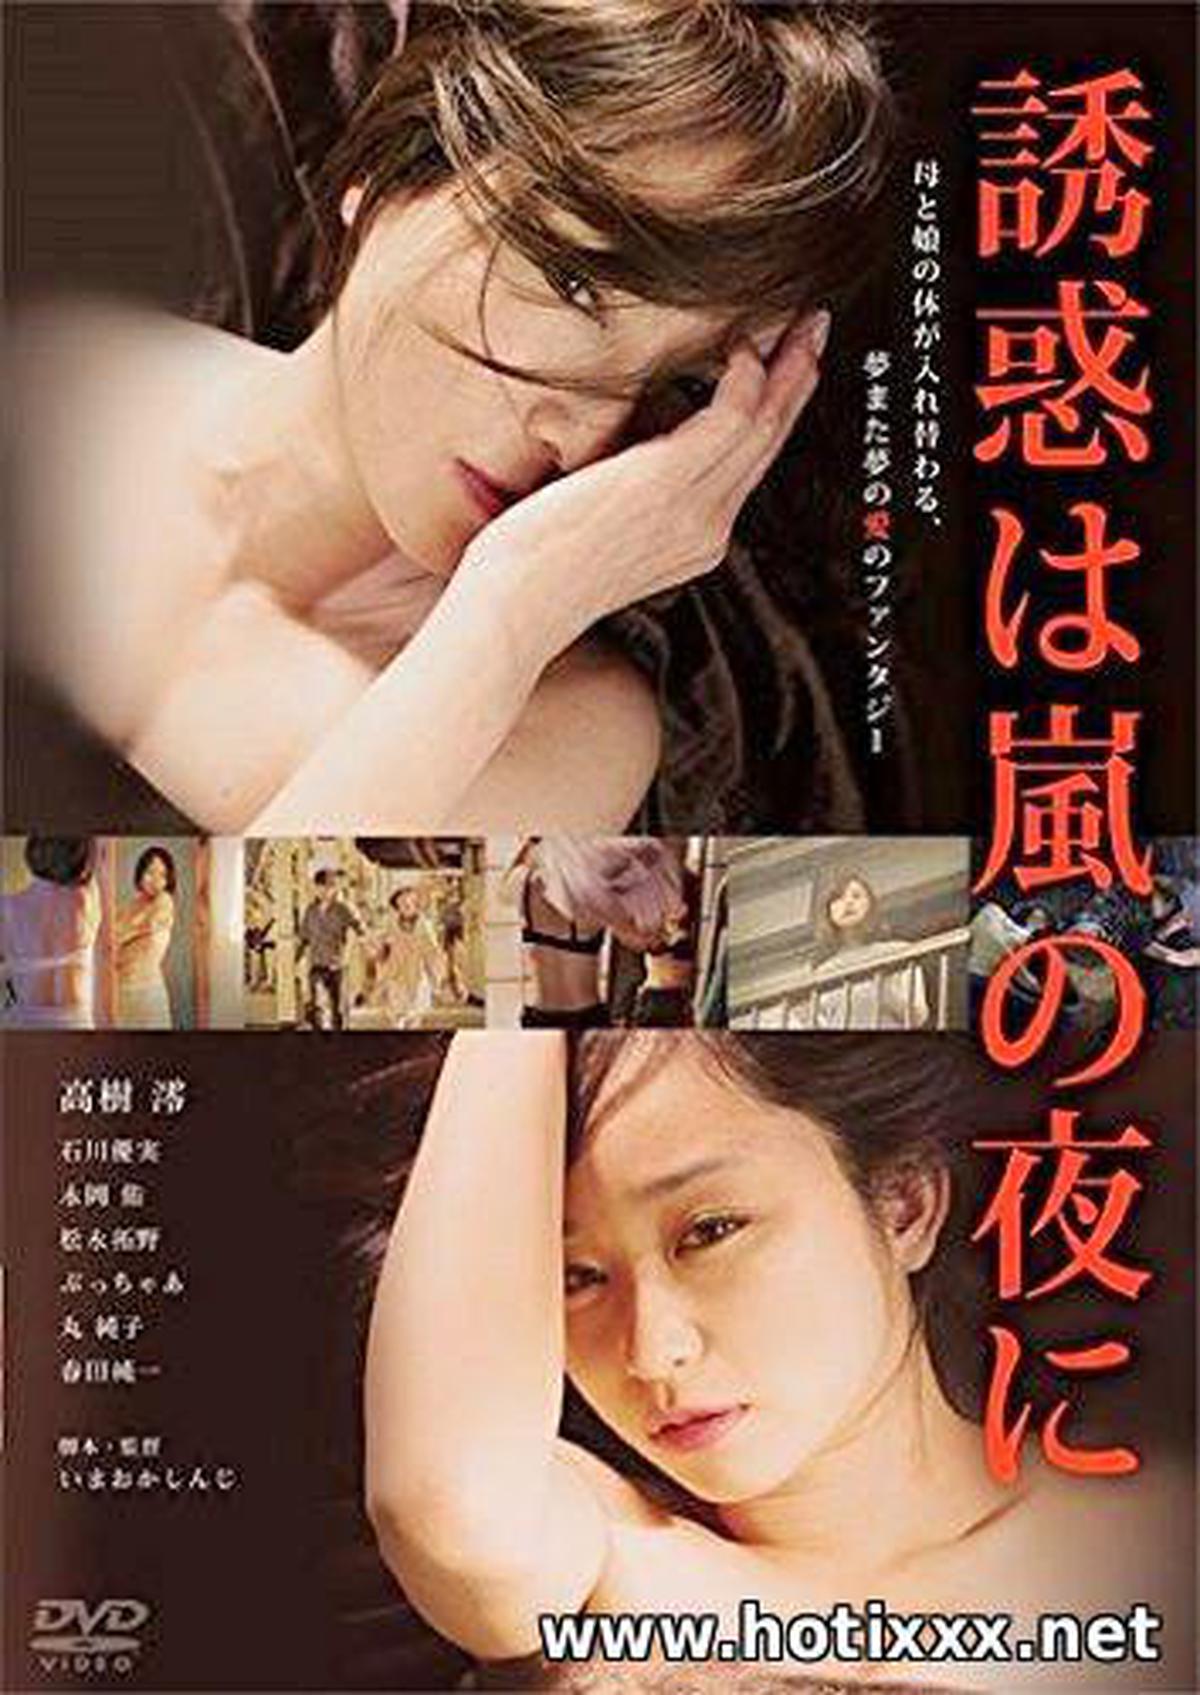 誘惑 は 嵐 の 夜 に / Yuwaku ha arashi no yoru ni / A tentação veio em uma noite de tempestade (2016)